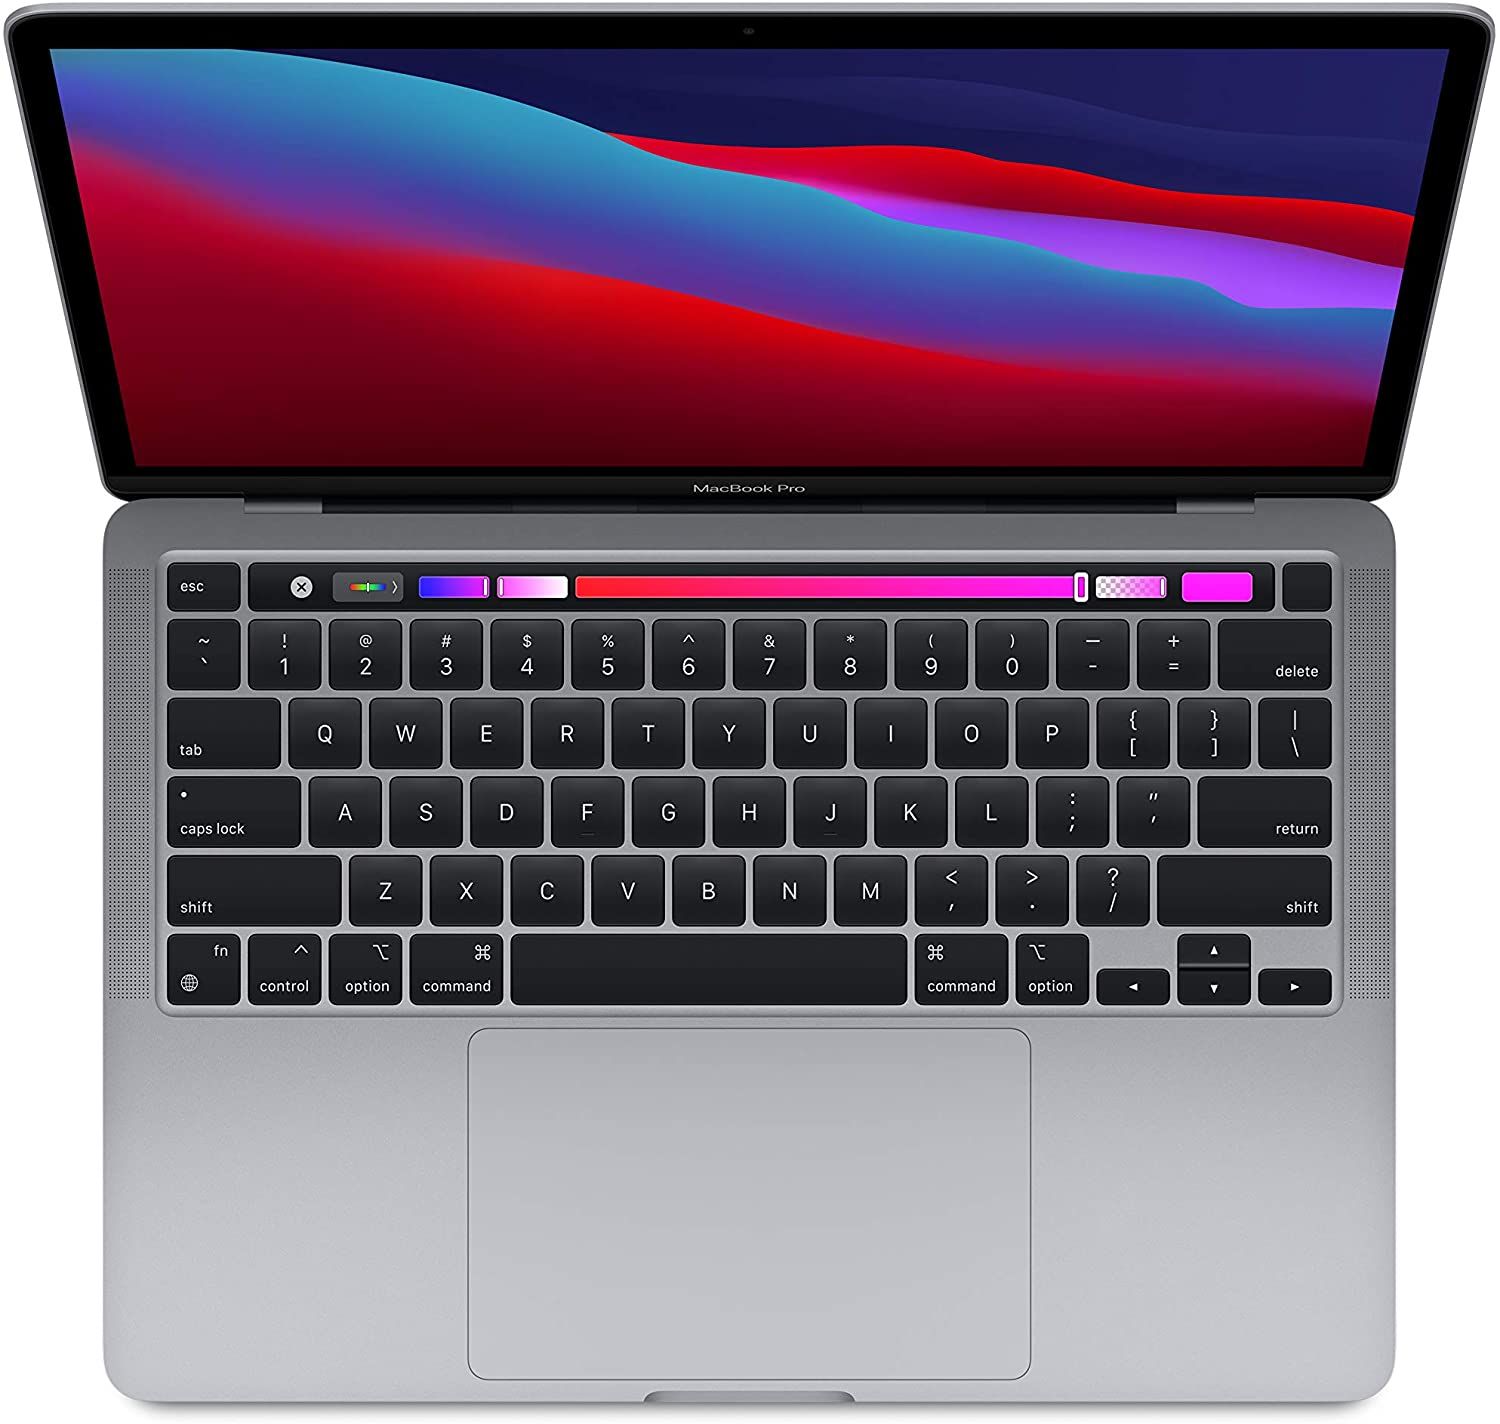 Apple MacBook Pro 13-inch (2020) keyboard